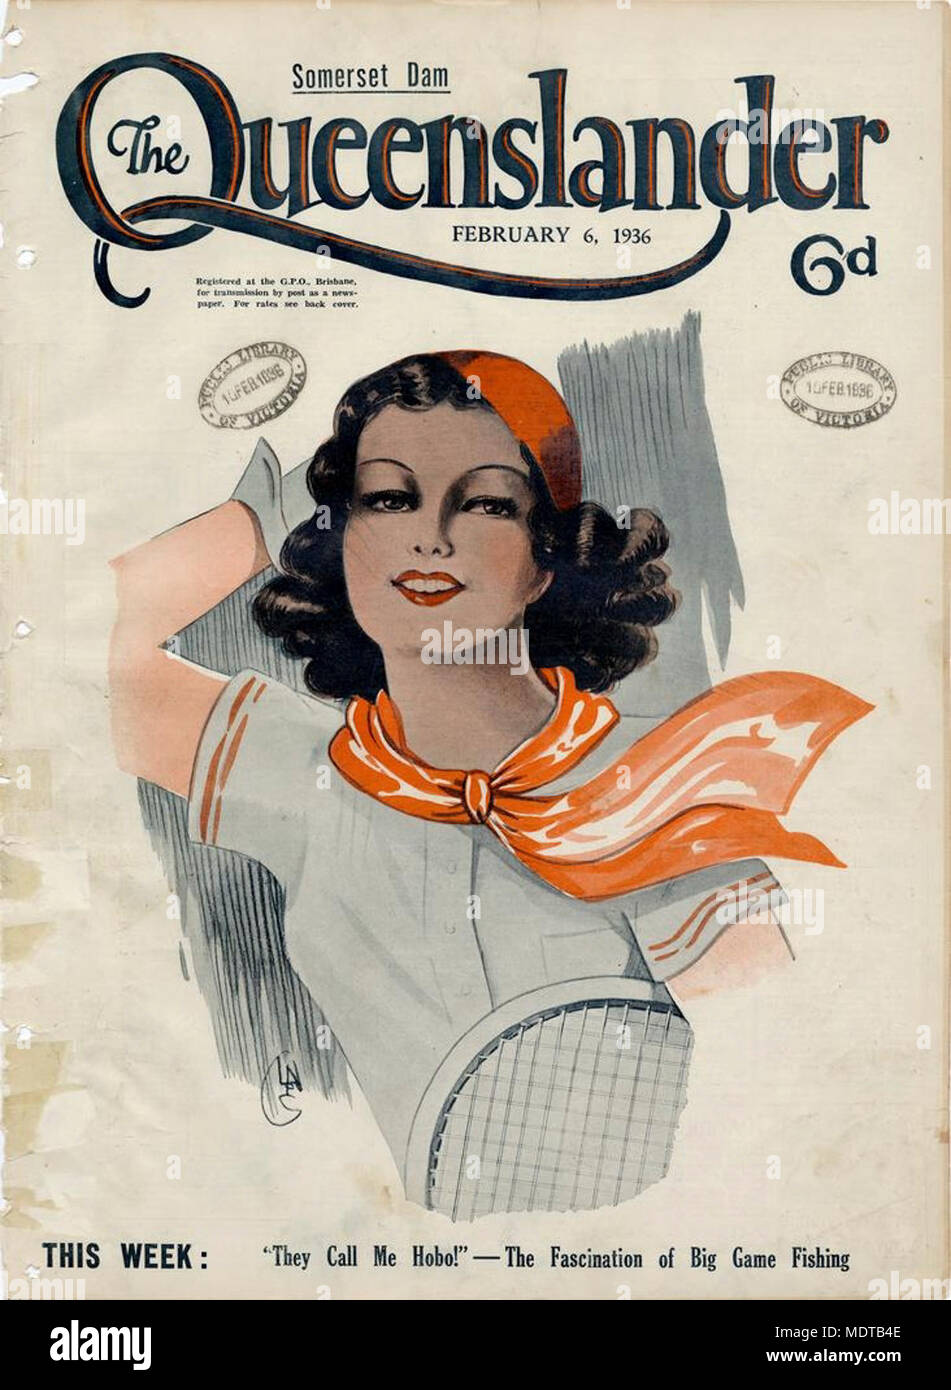 L'illustre la protection avant de la Queenslander, 6 février 1936. Emplacement : Queensland, Australie Description : Dessin d'une jeune femme habillée à la mode avec un foulard orange et béret, tenant une raquette de tennis. Banque D'Images